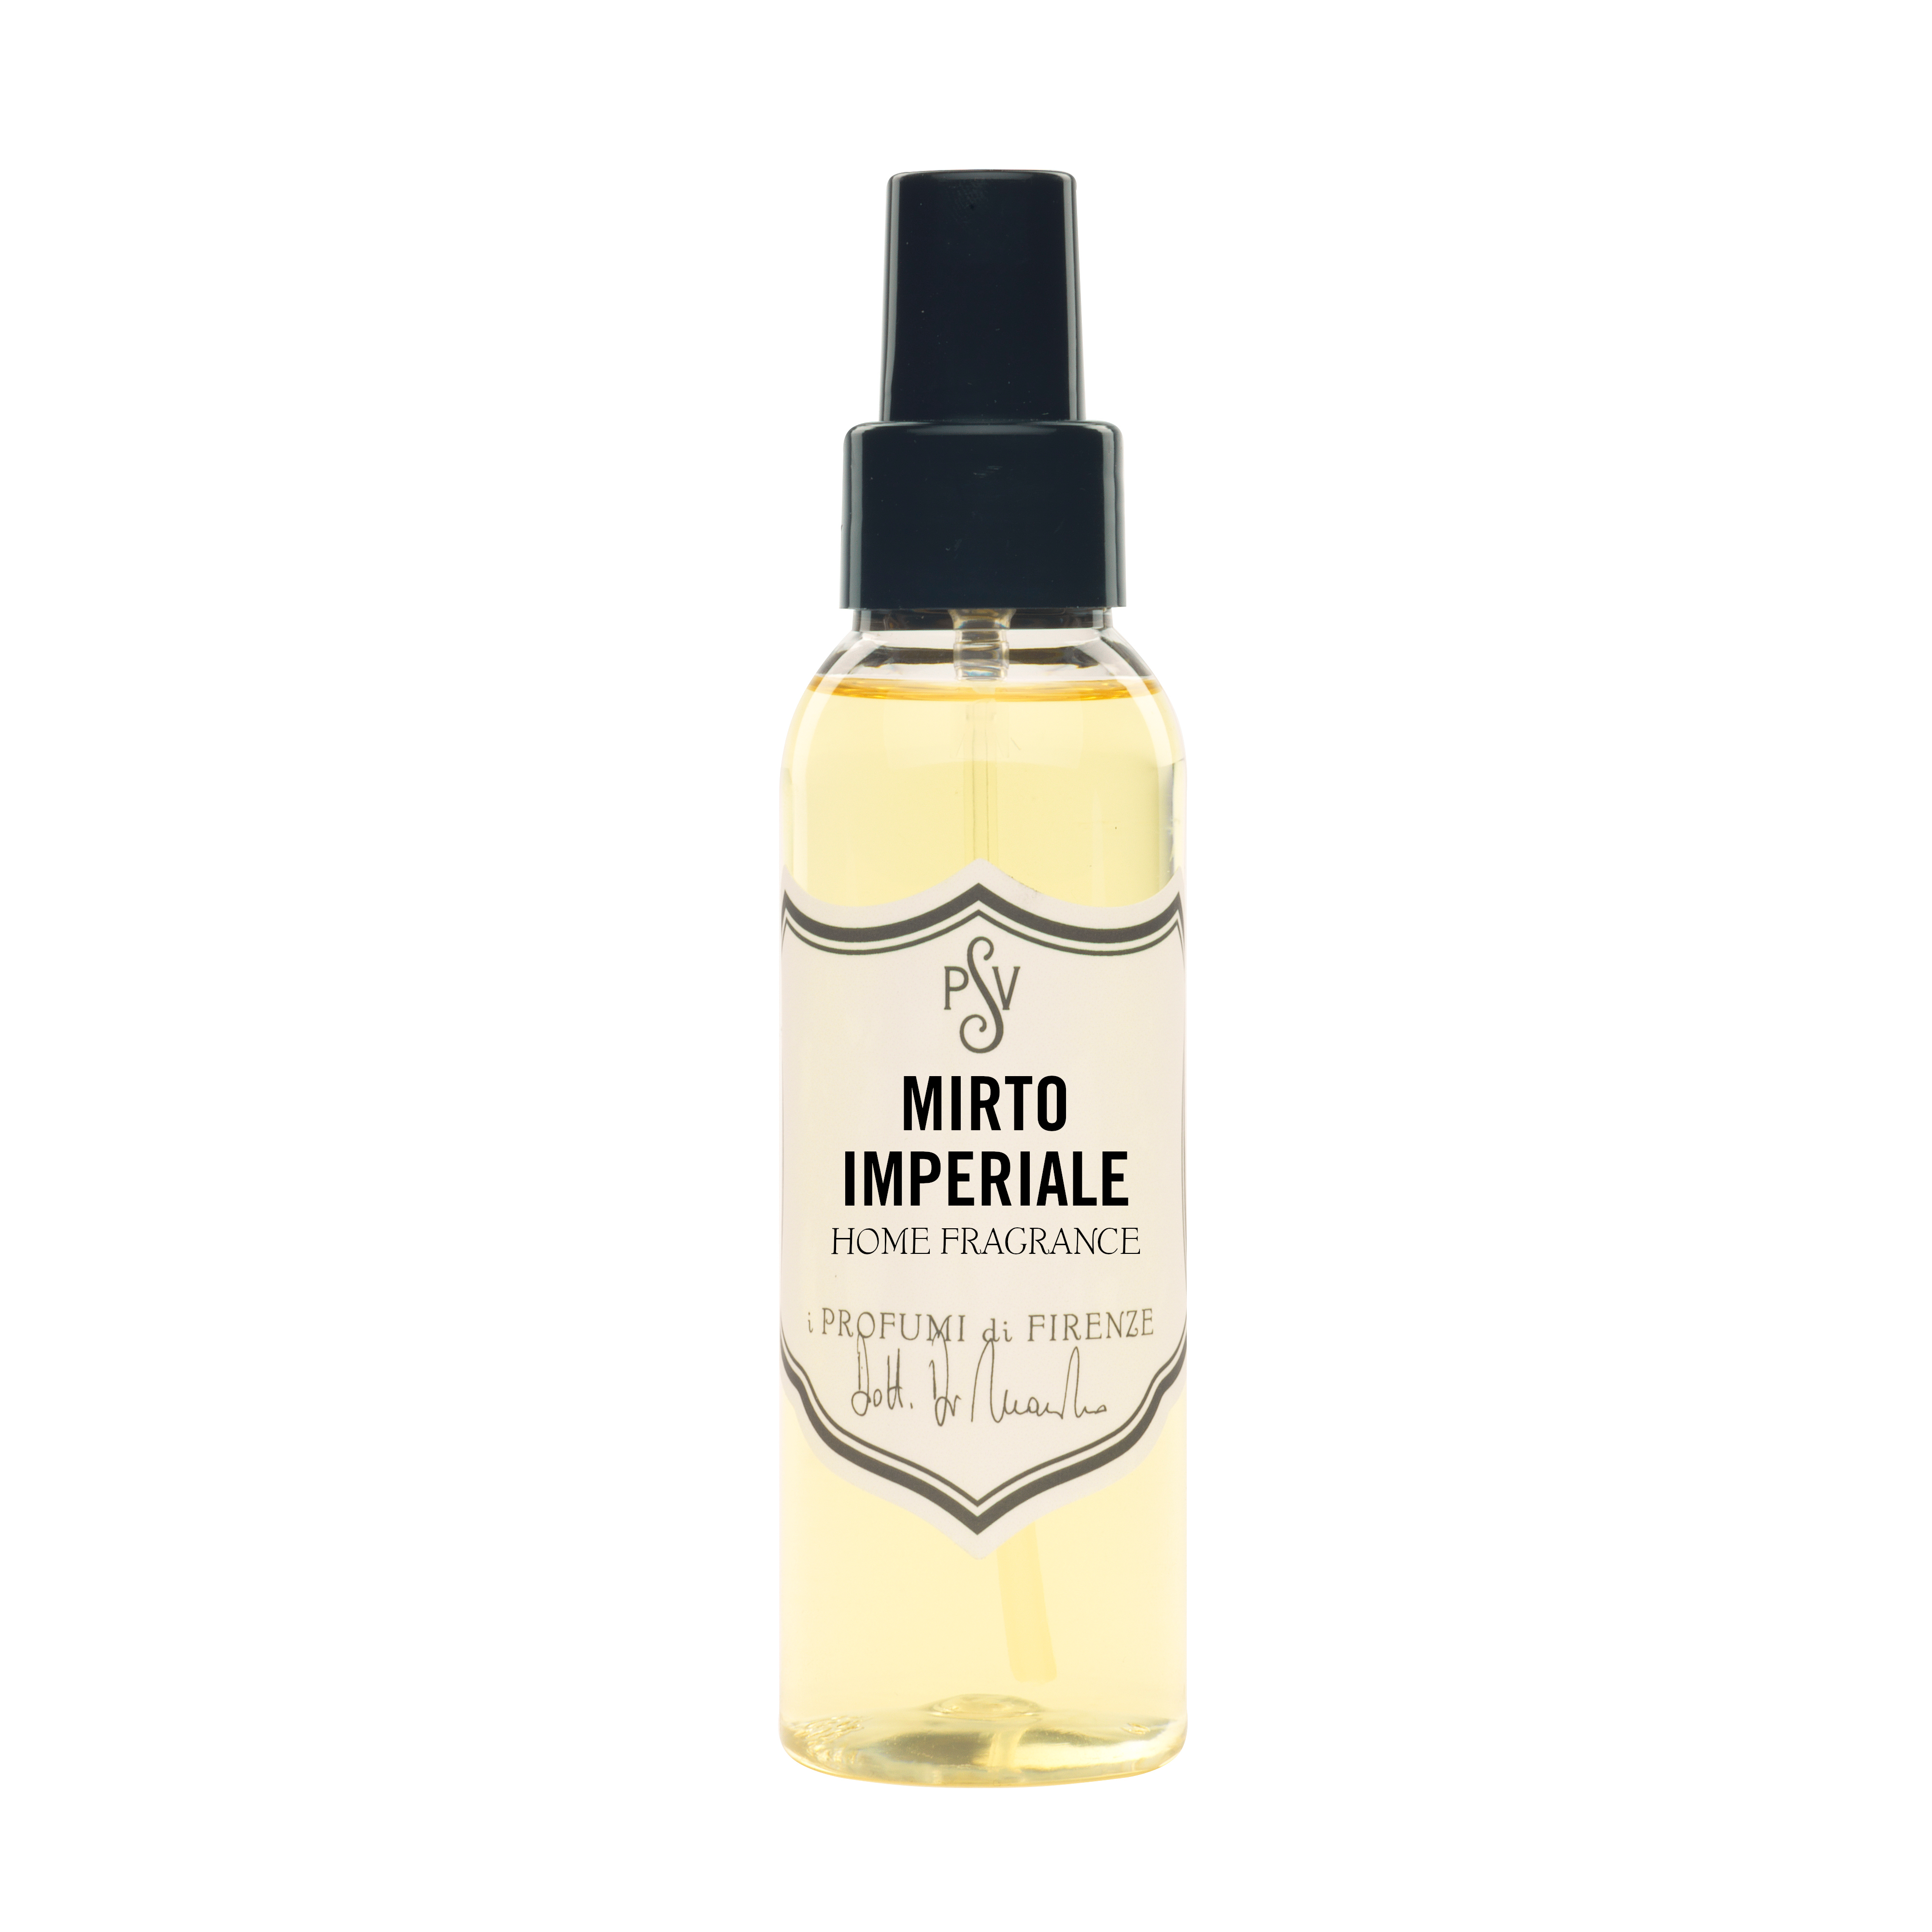 MIRTO IMPERIALE 100ml - Home Fragrance Spray-0